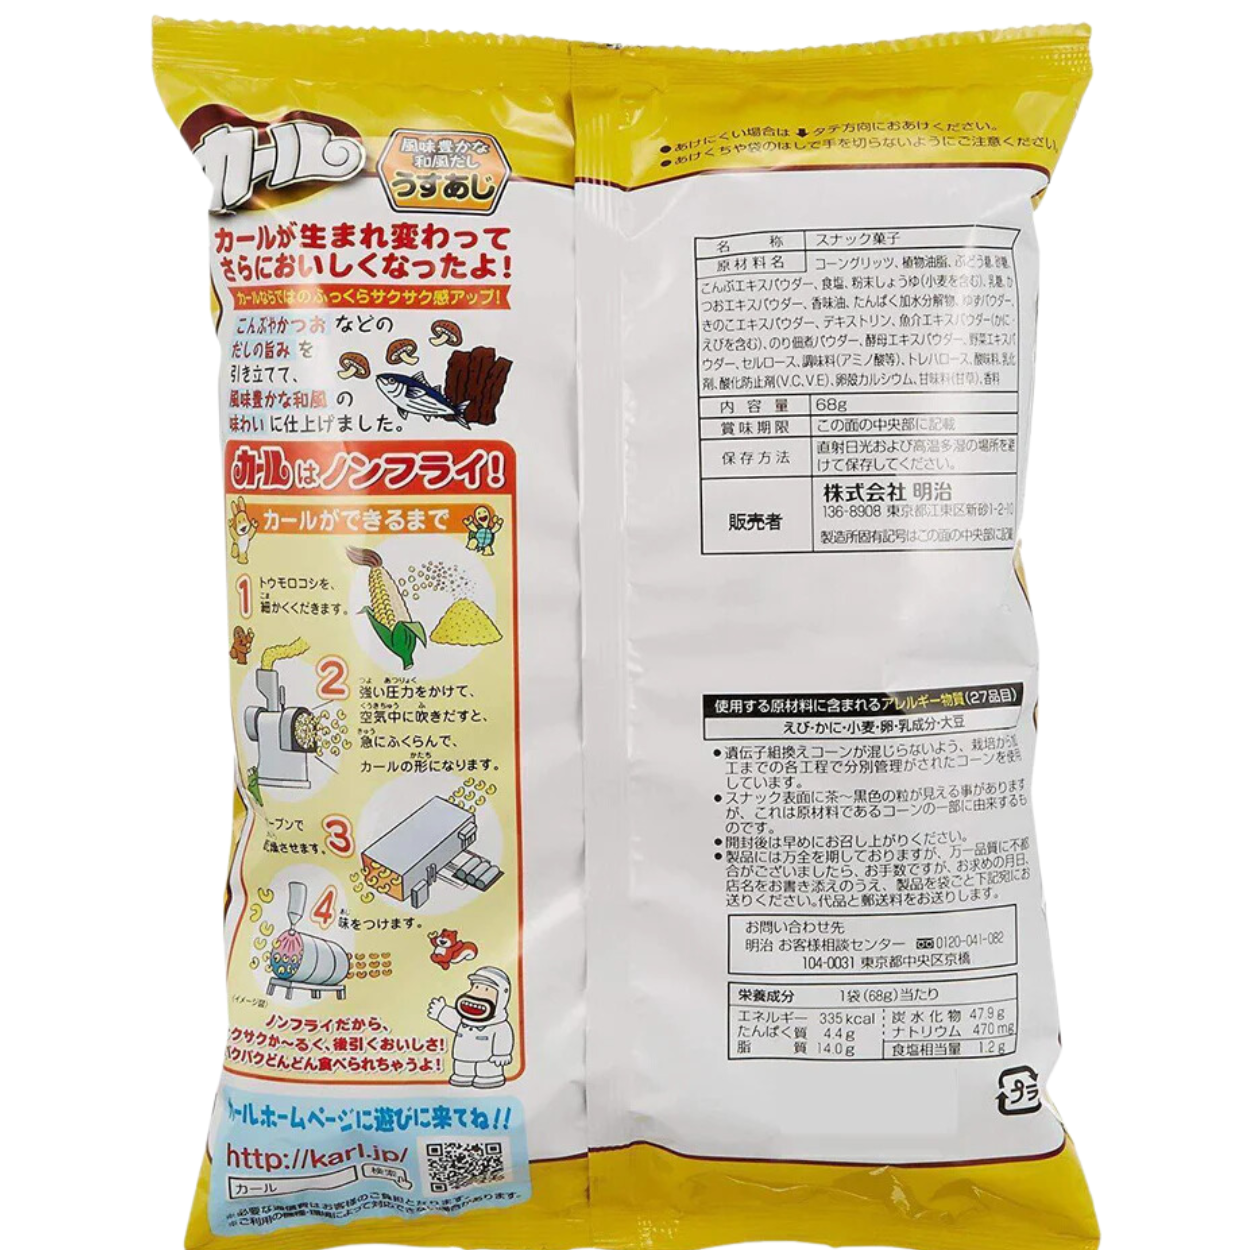 Meiji Light Salt Corn Puffs